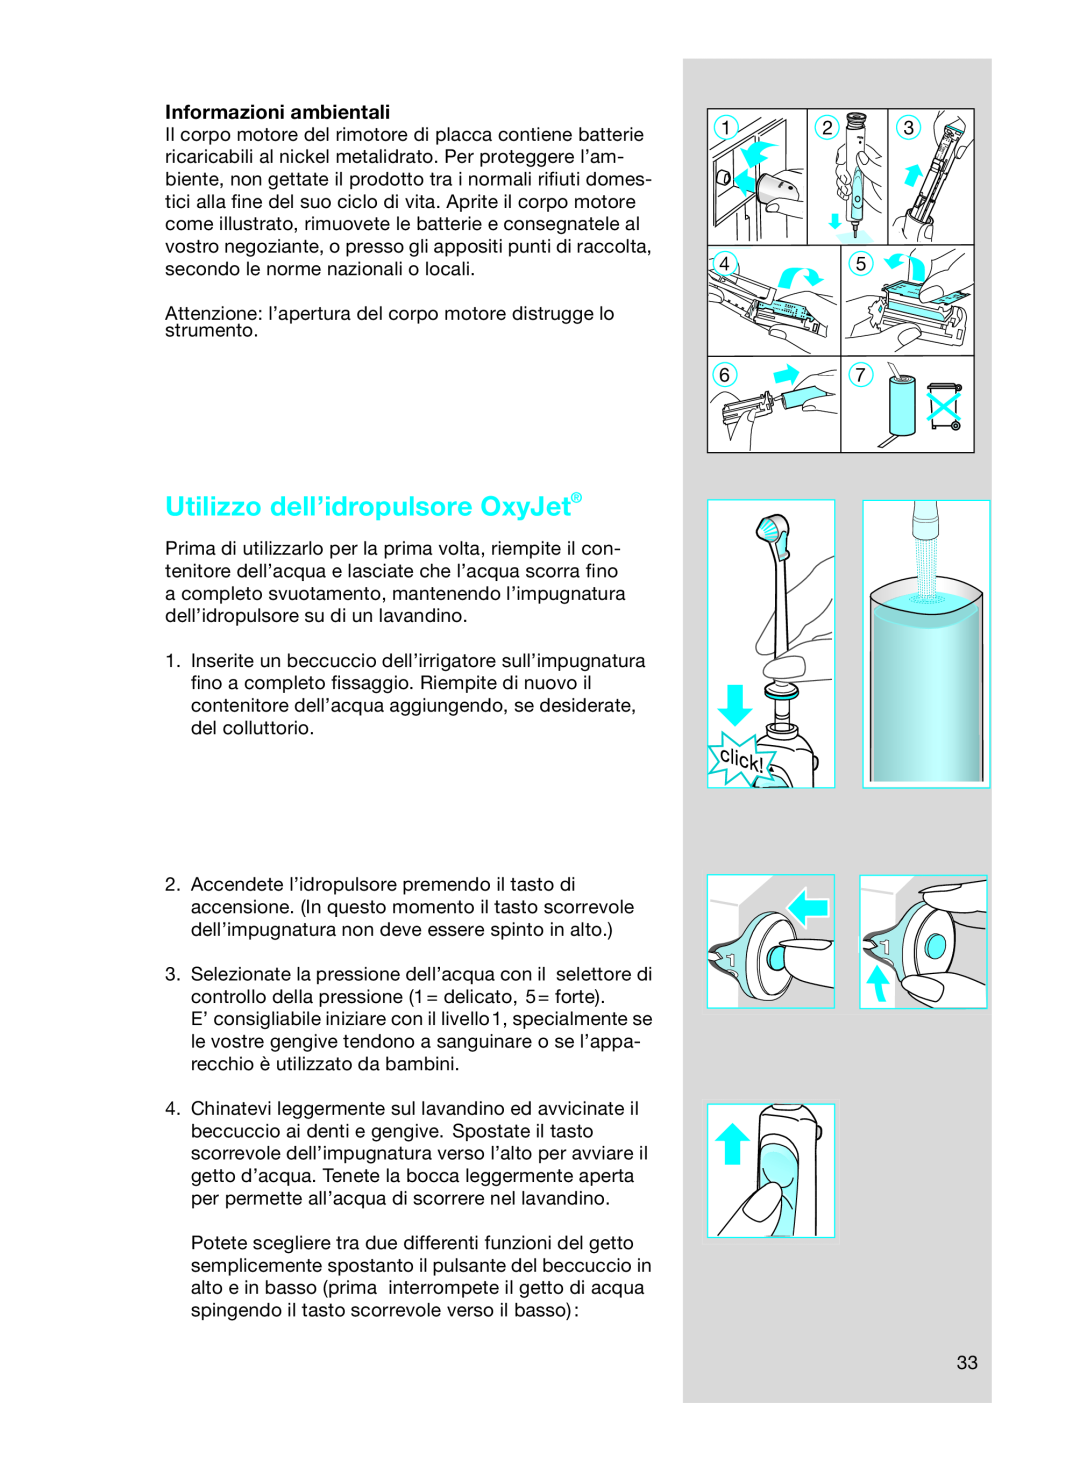 Braun OC17525, OC 17545X manual Utilizzo dell’idropulsore OxyJet, Informazioni ambientali 